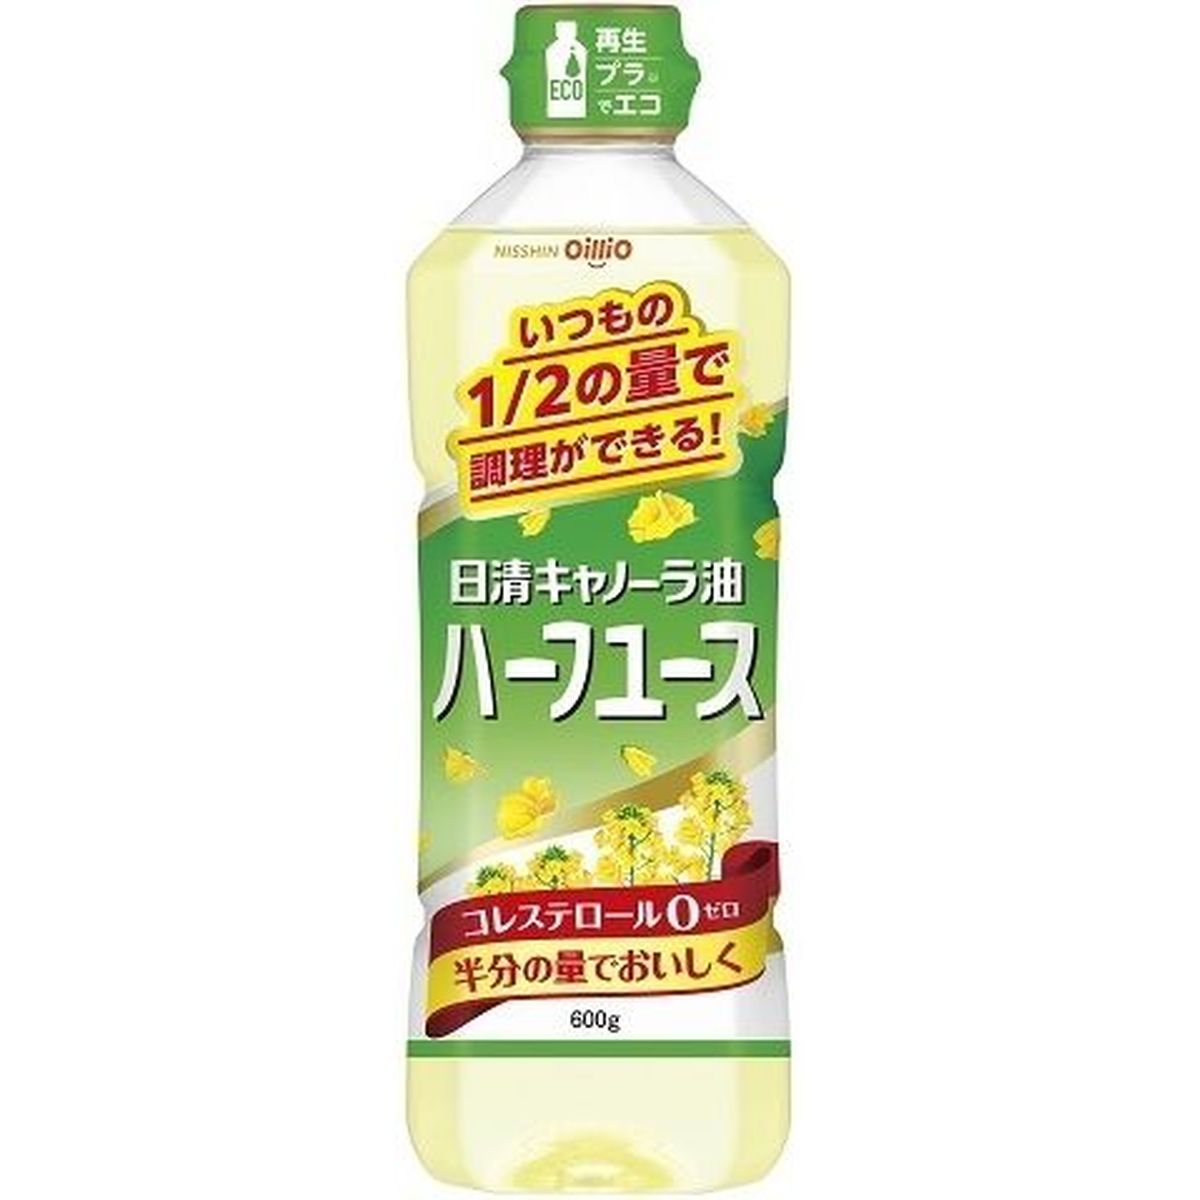 【10個入リ】日清オイリ 日清キャノーラ油ハーフユース 600g